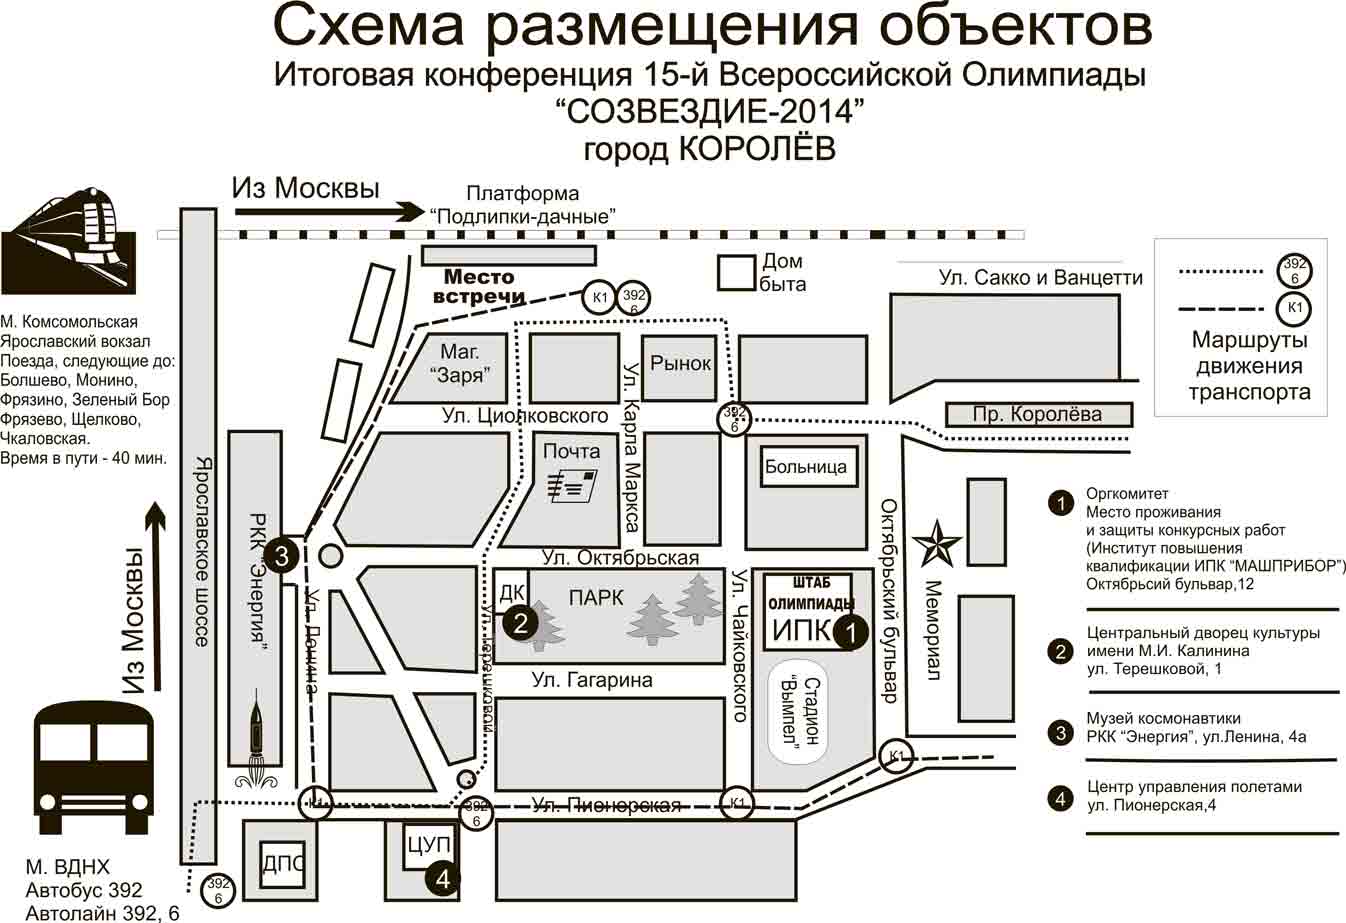 Московский вокзал нижнего новгорода: адрес, телефоны и услуги